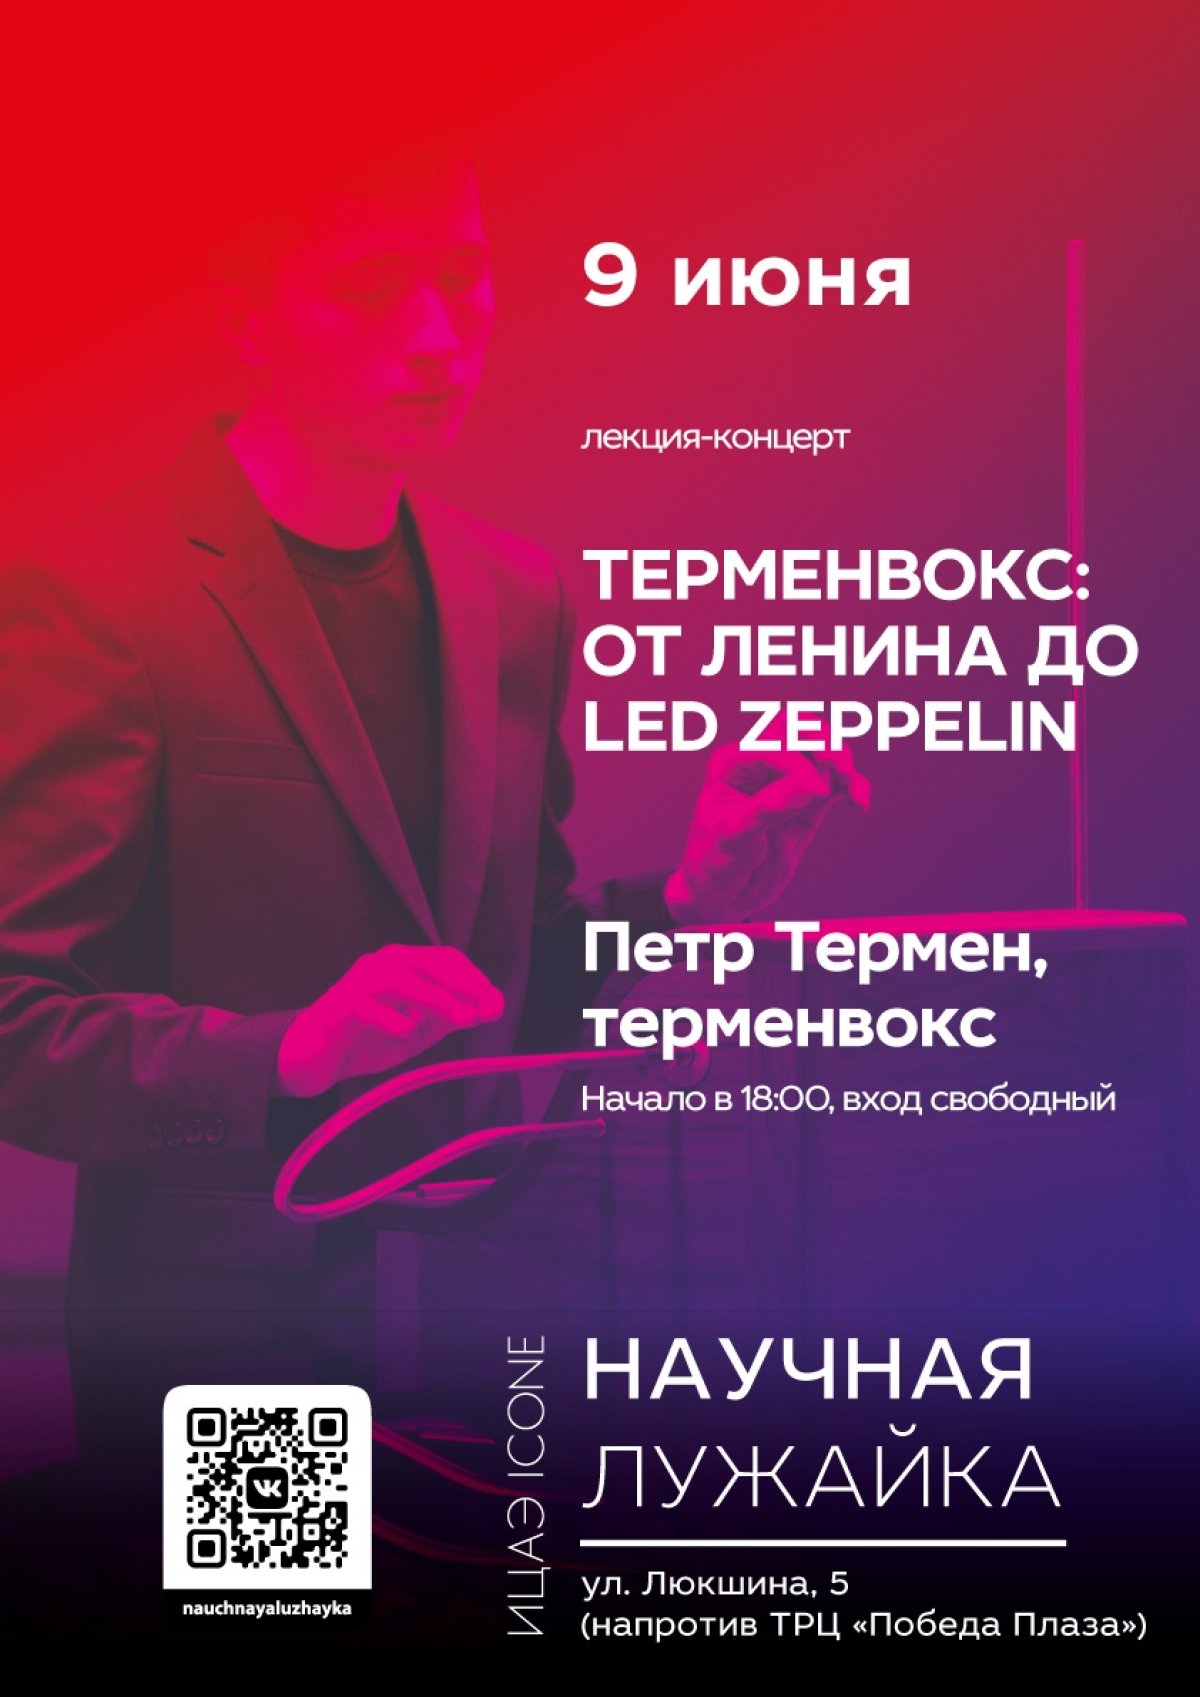 9 июня, в воскресенье, на НАУЧНОЙ ЛУЖАЙКЕ состоится лекция-концерт и мастер-класс Петра Термена